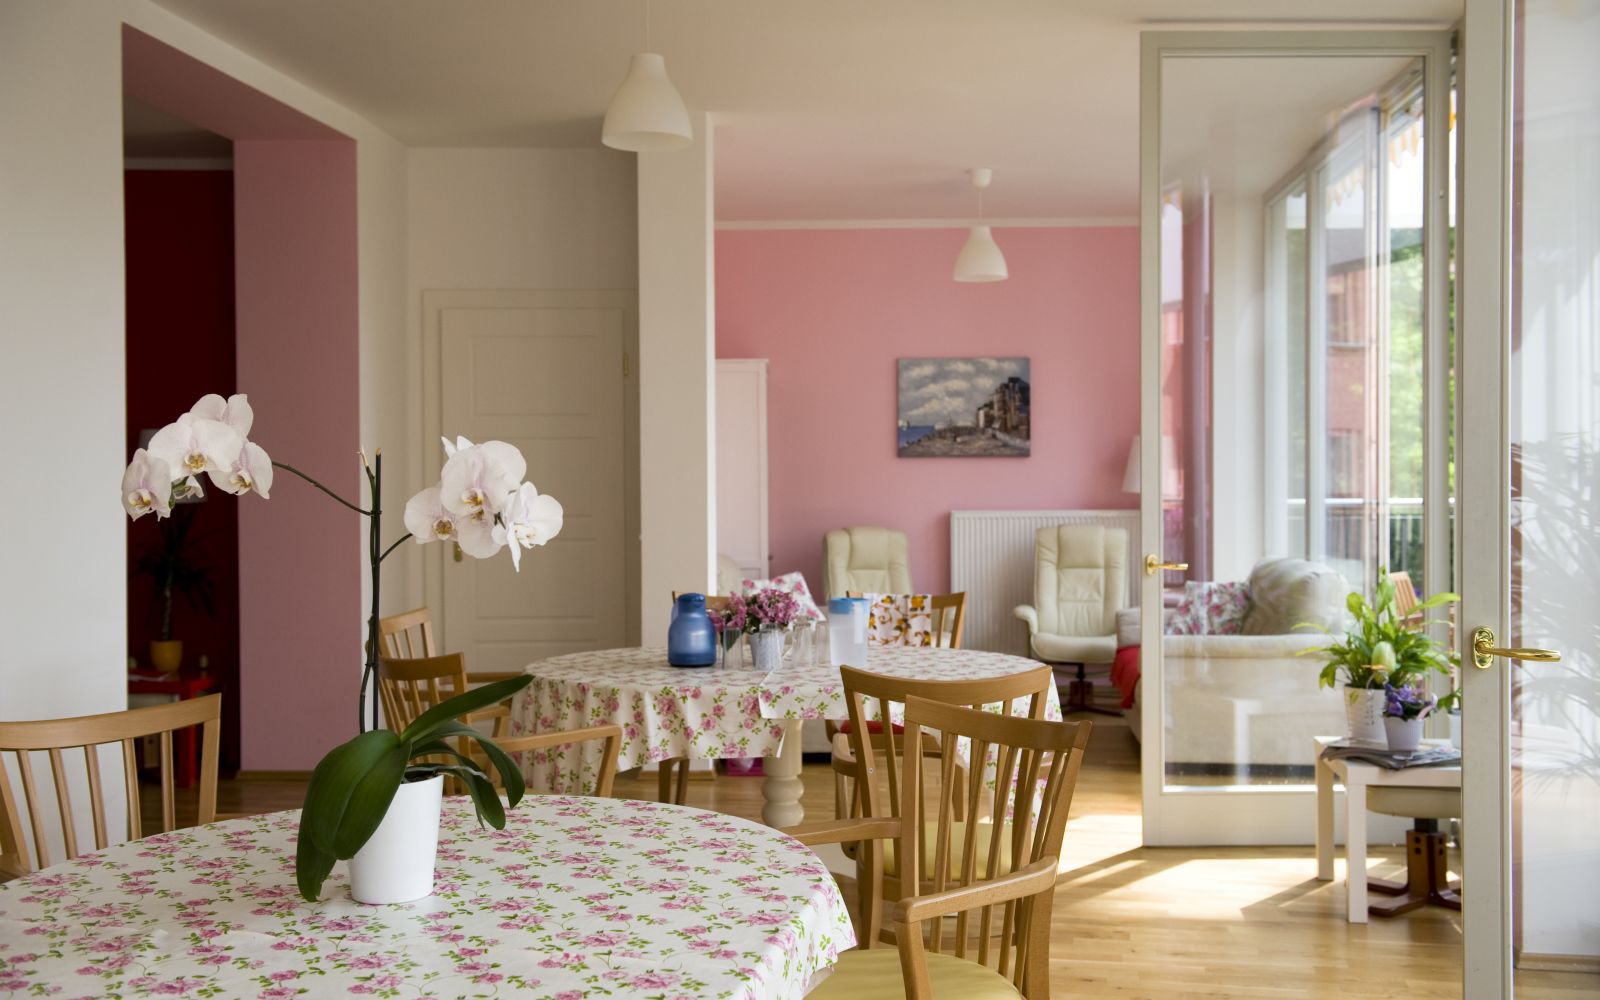 Stühle und Tische in lichtdurchfluteten Raum mit rosanen Wänden.